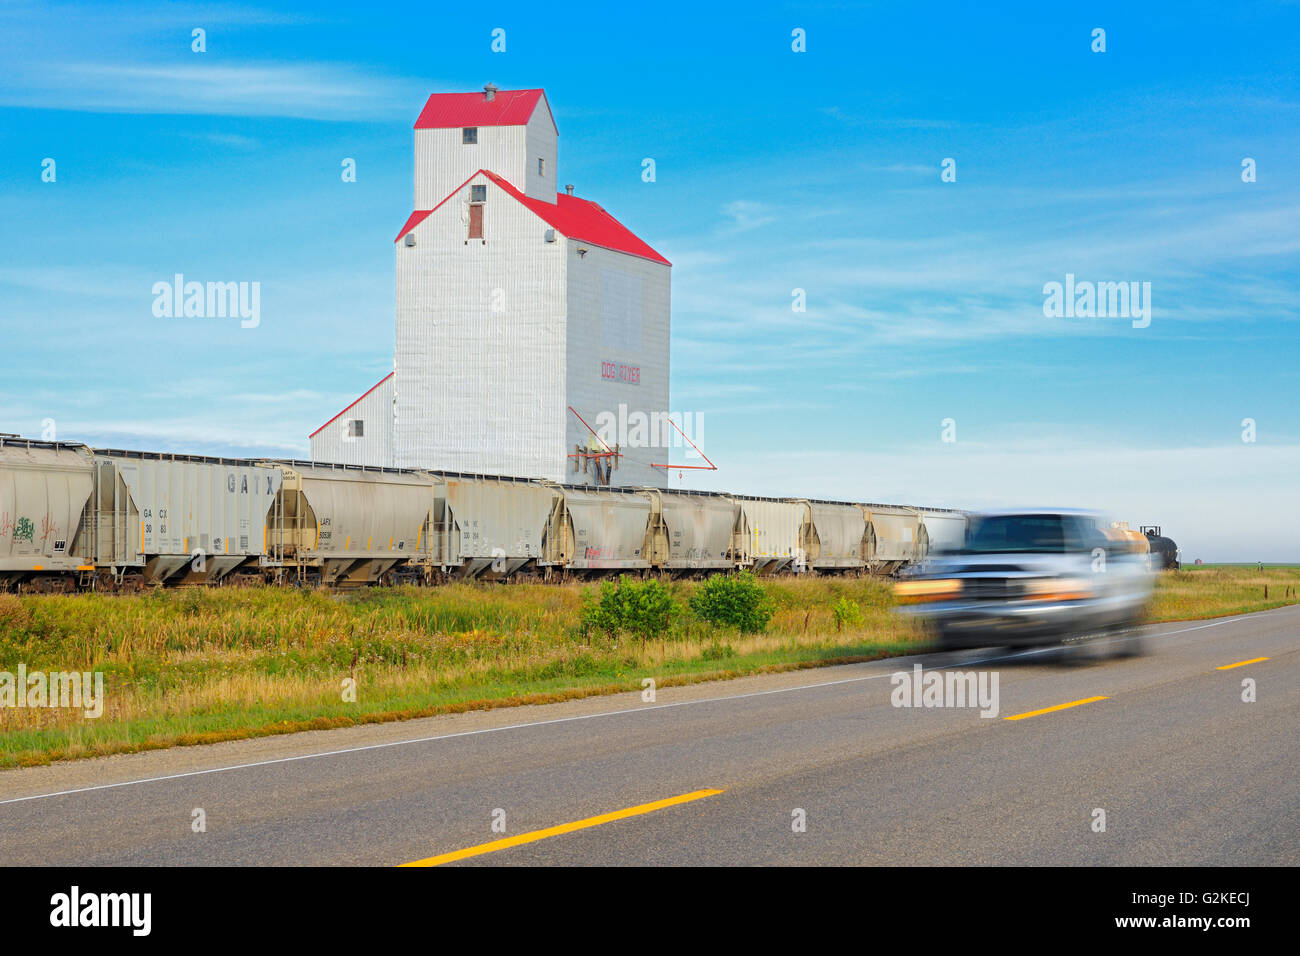 Elevatore della granella, treni e camion. Questa è la città di Fiume Dog nella serie TV "Angolo a Gas". Rouleau Saskatchewan Canada Foto Stock